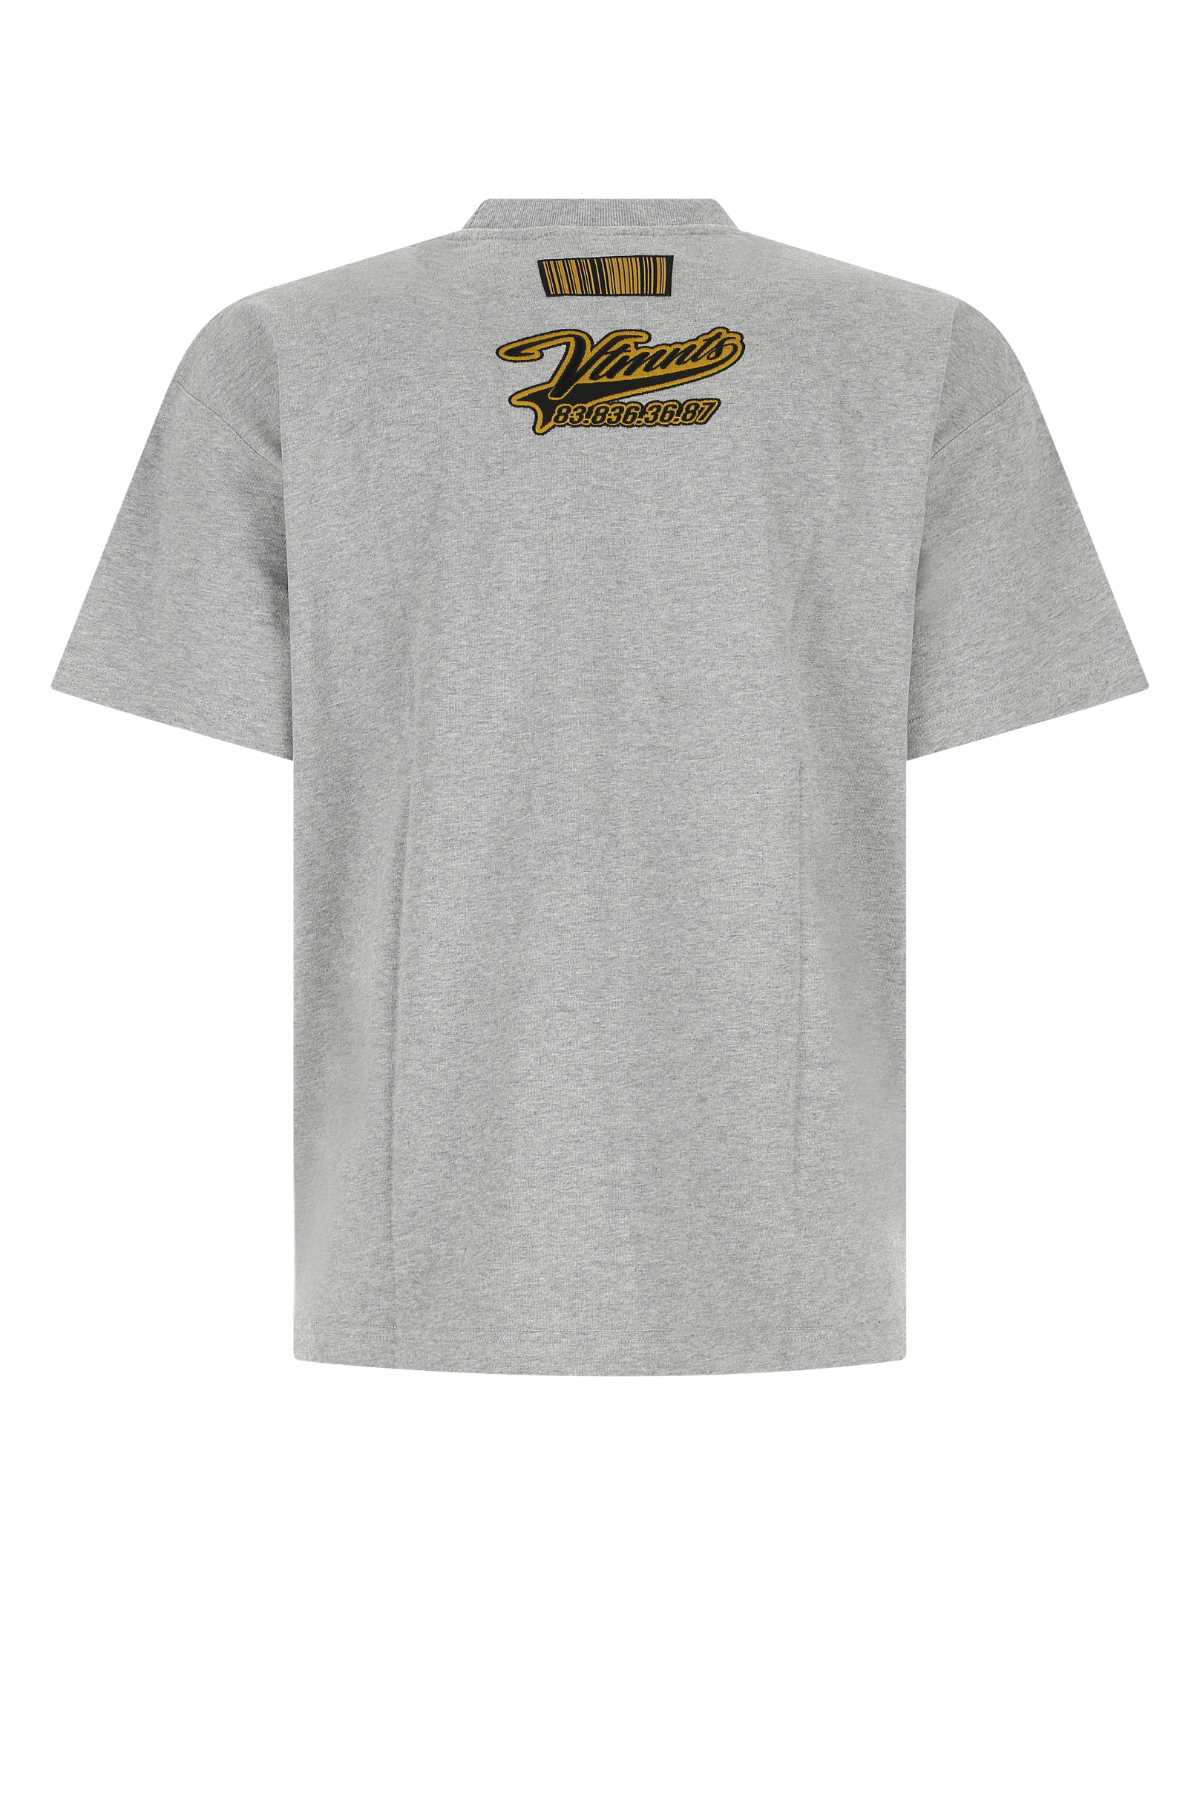 Vtmnts Melange Grey Cotton T-shirt In Greymelange